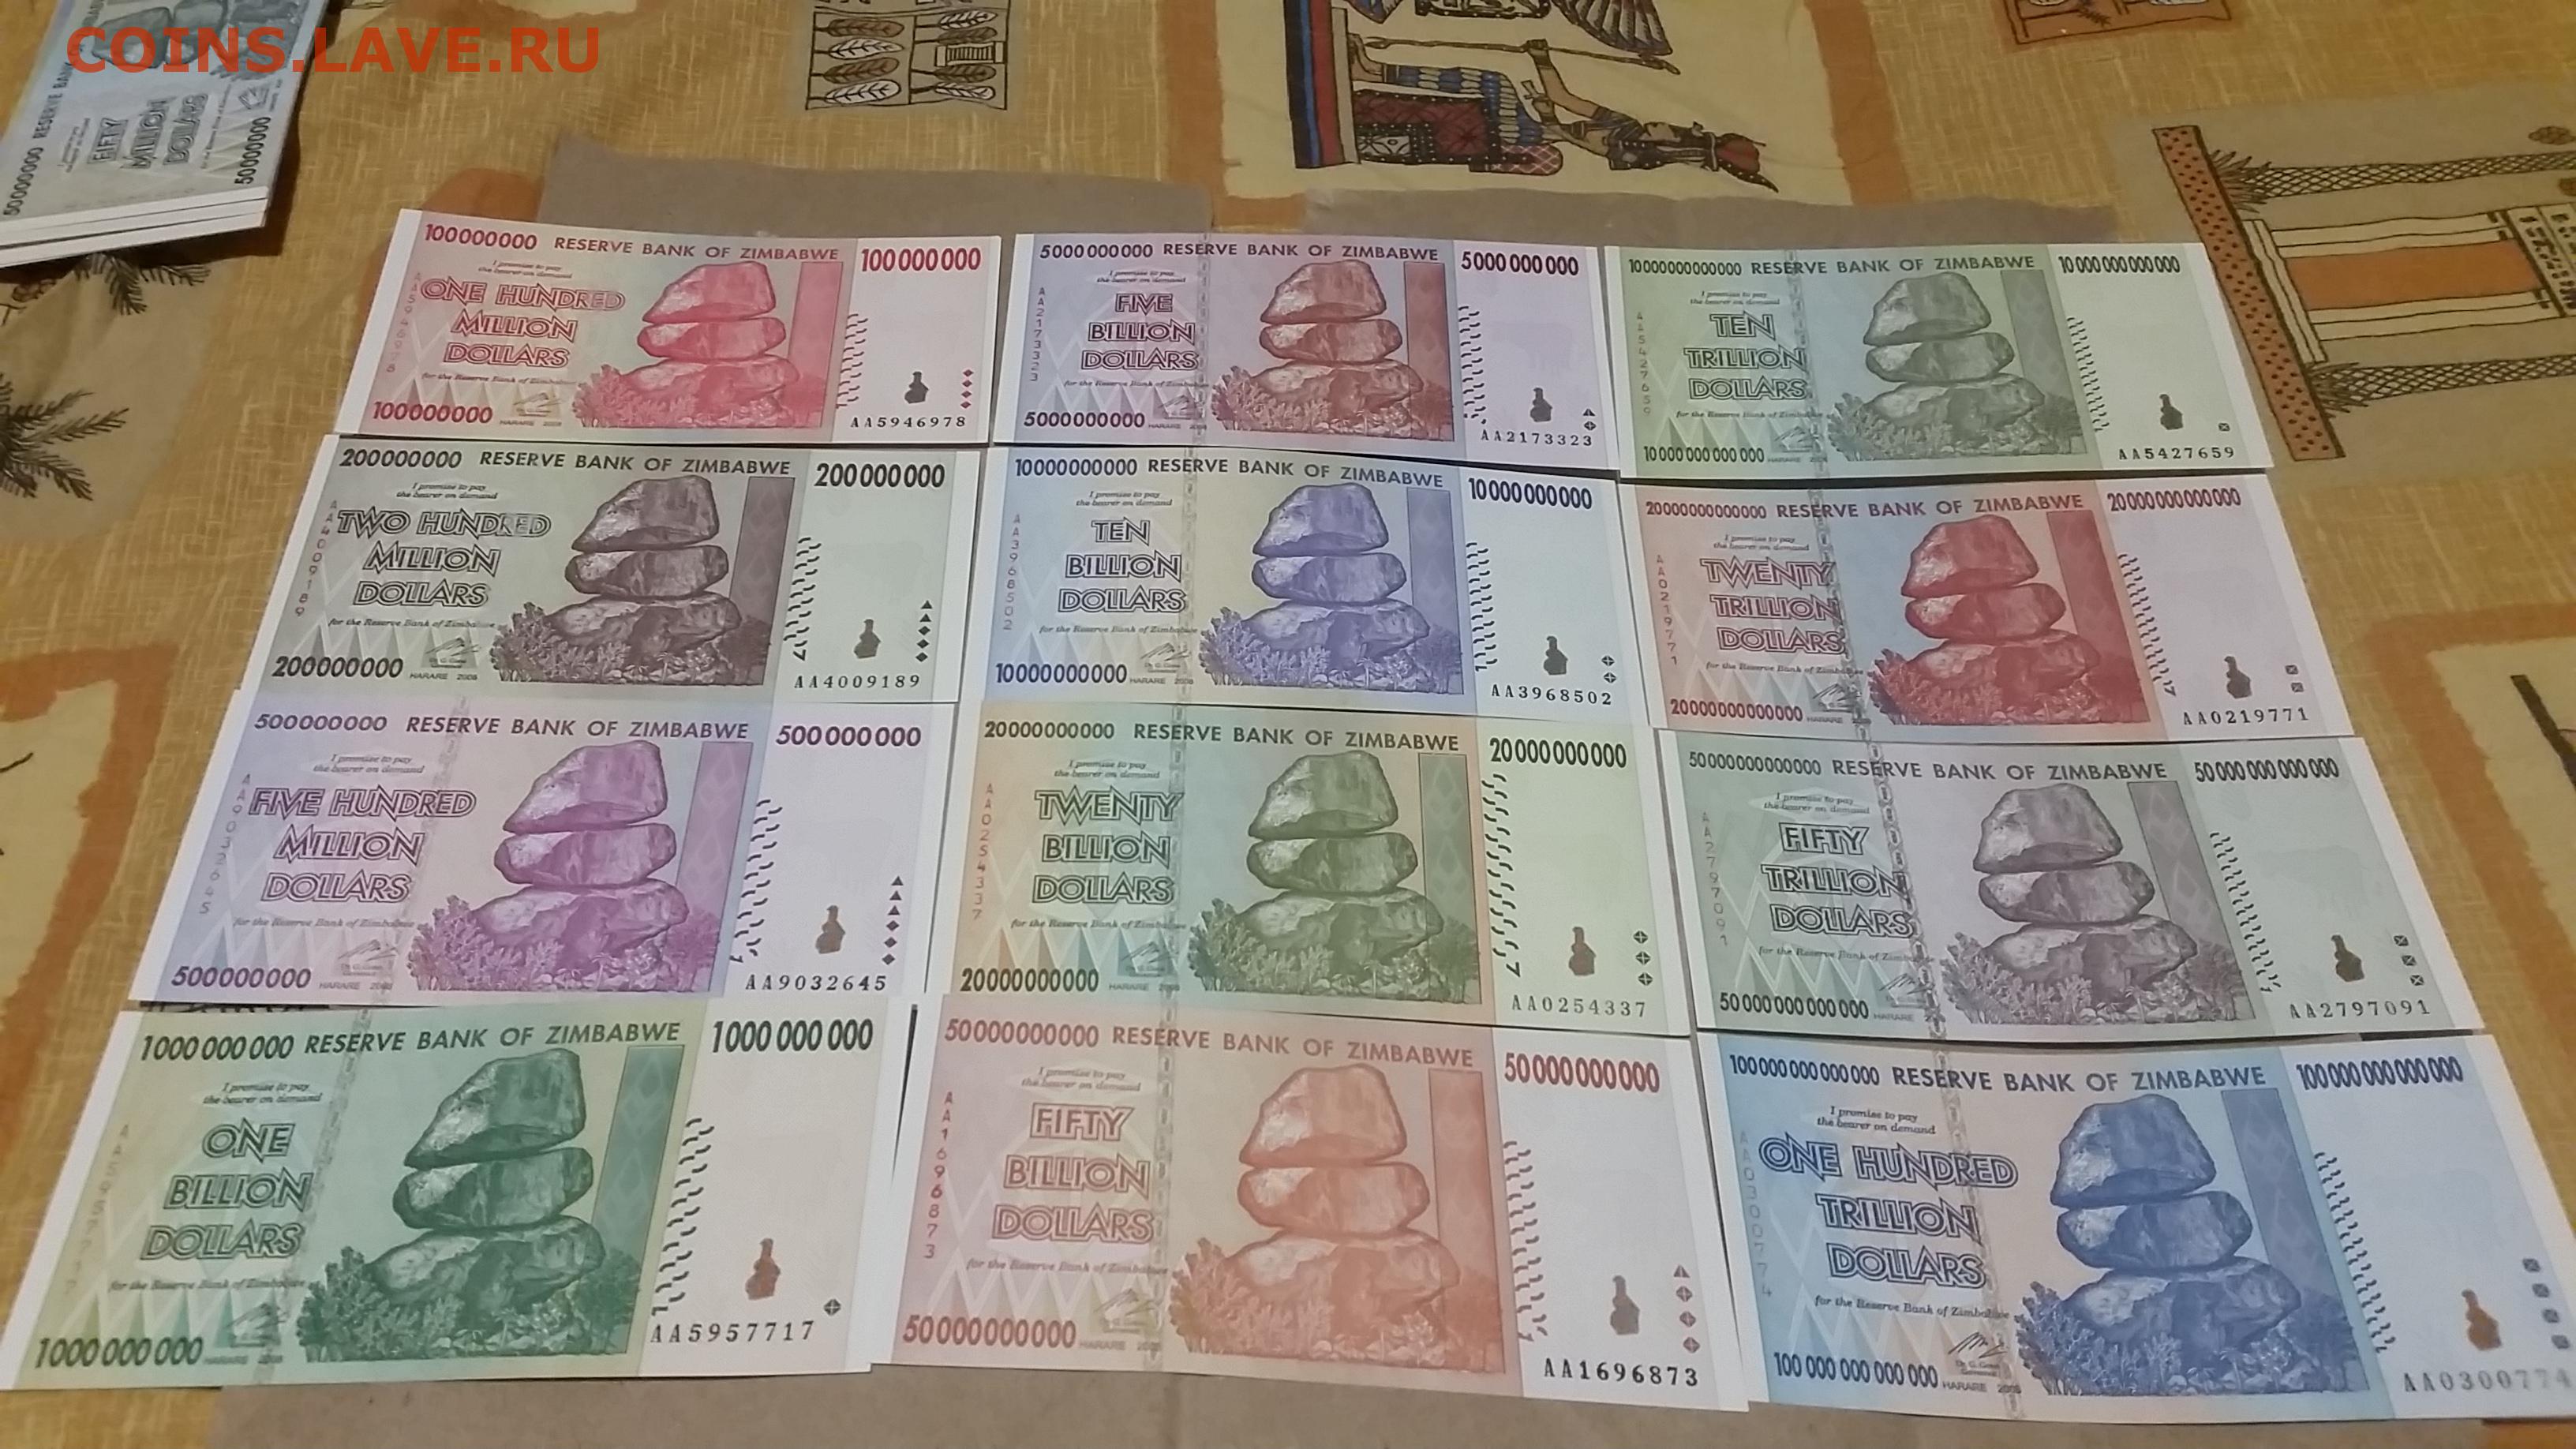 1000000 100000000 плюс 100000000. Самая крупная купюра Зимбабве. Самая большая купюра в мире по размеру. Доллар Зимбабве деноминация. Купюра в 1 миллиард долларов Зимбабве.